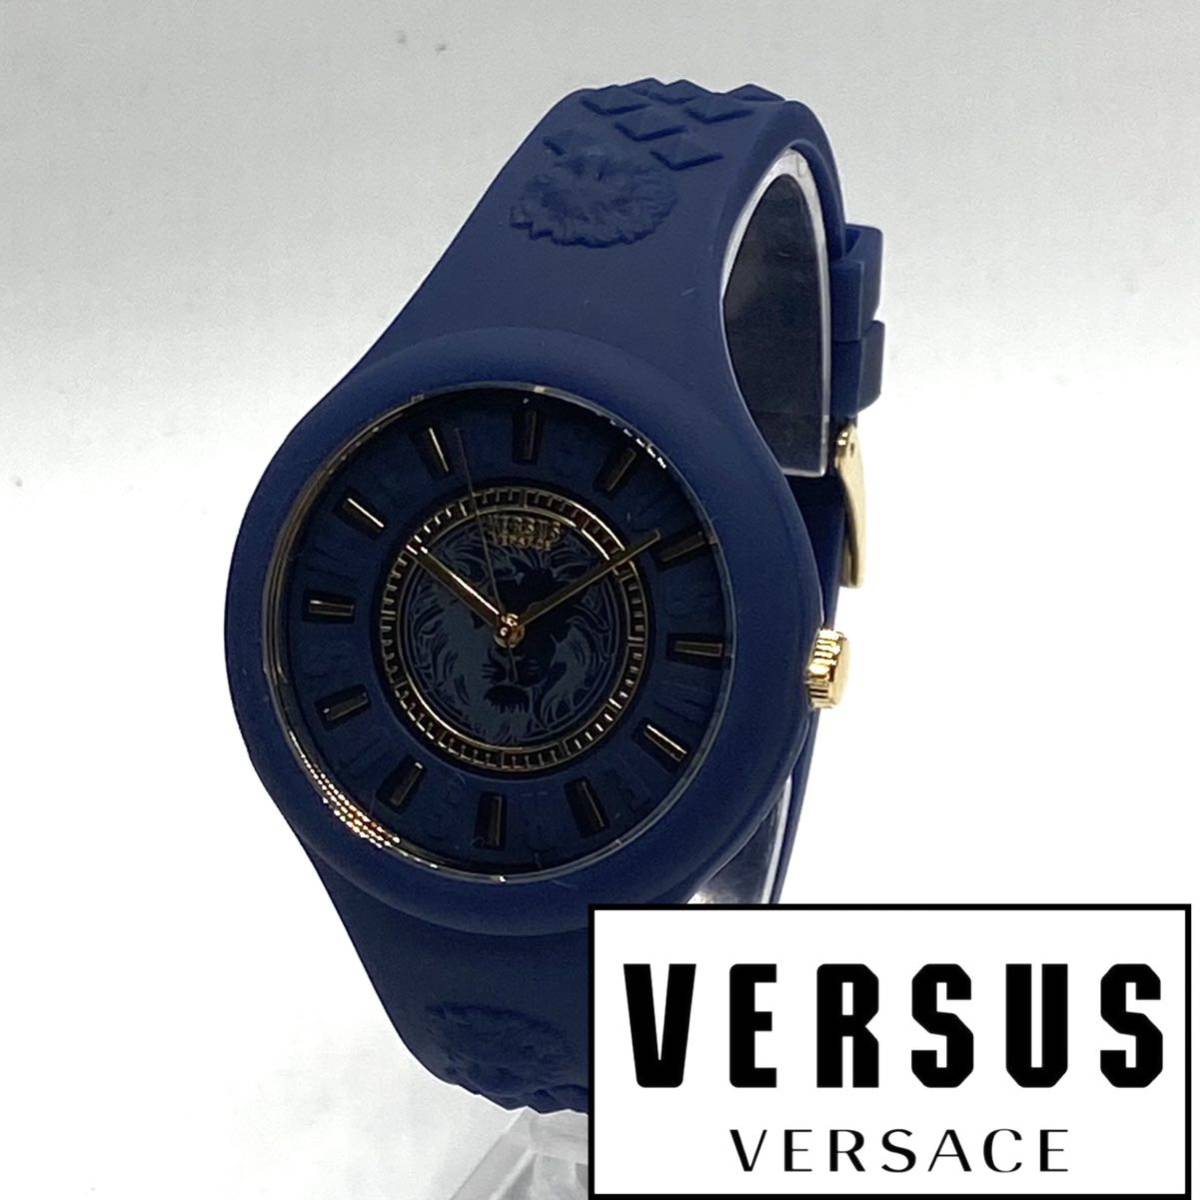 ★海外限定品! シンプルな美しさ! ヴェルサス ヴェルサーチ Versus Versace レディース 腕時計 クォーツ ラバー 高級ブランド 新品 青